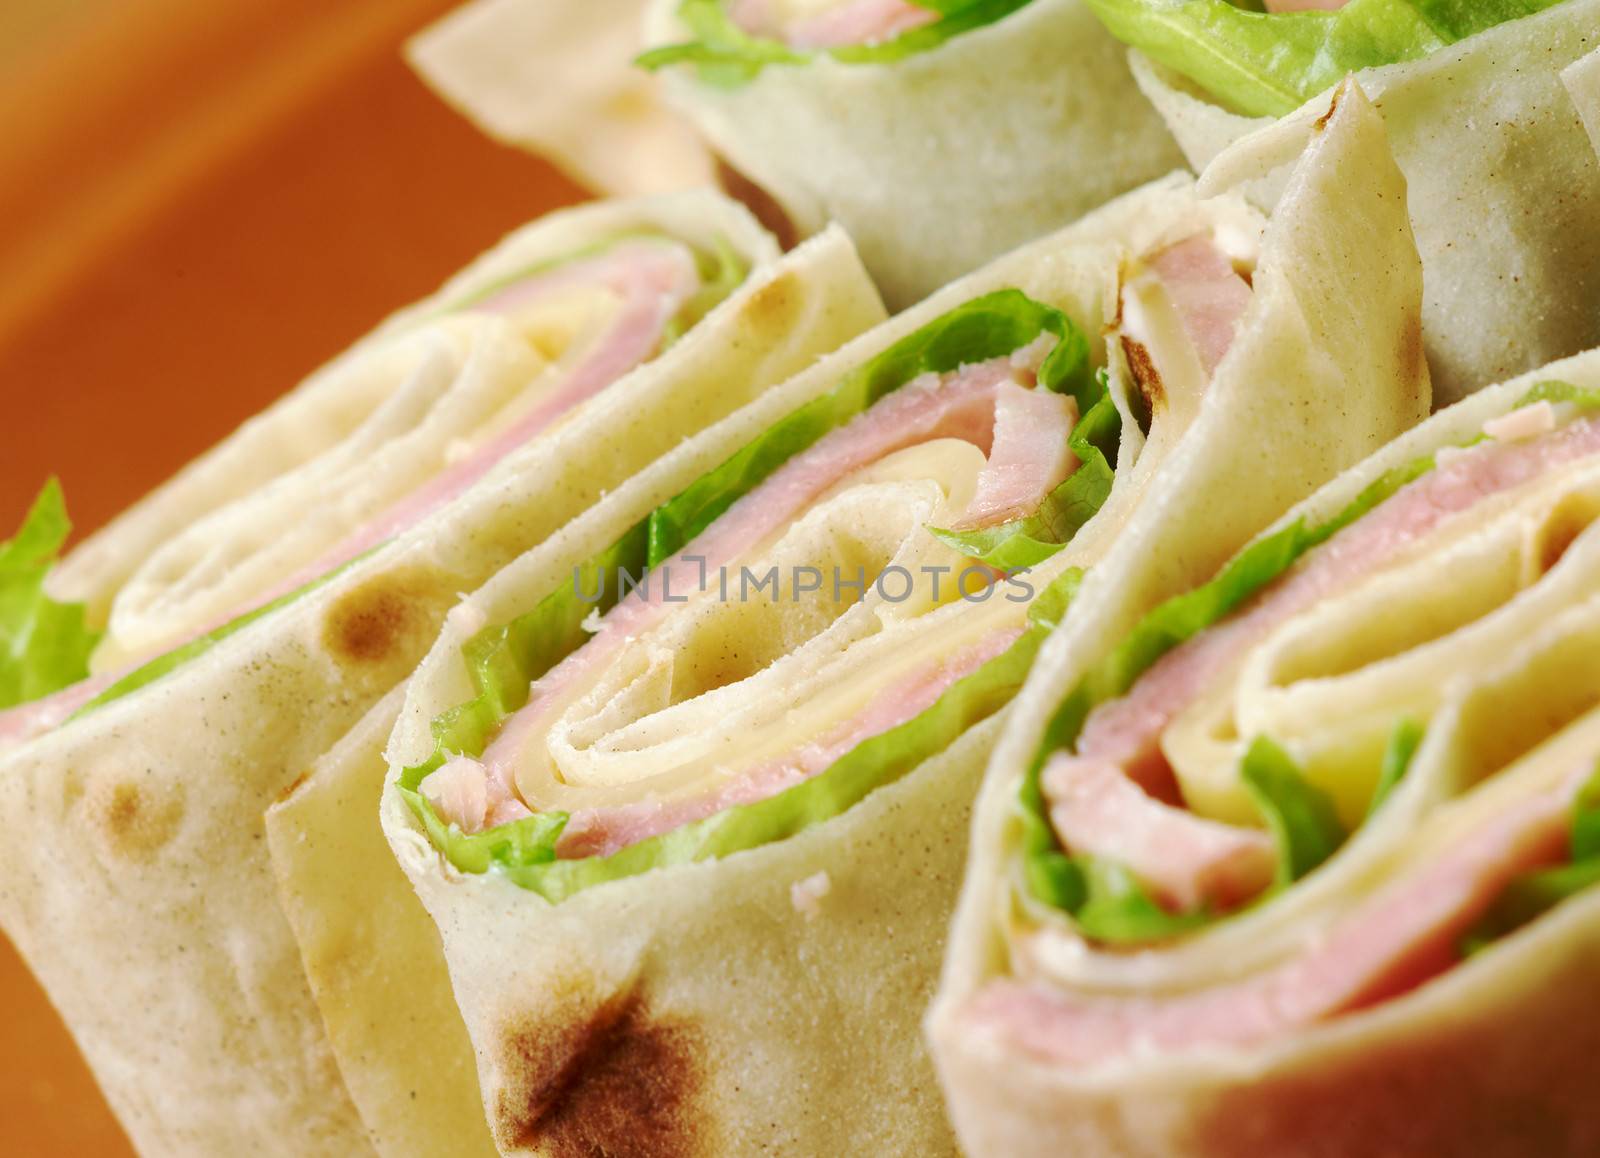 healthy club sandwich pita bread roll with cheese,ham,parsley